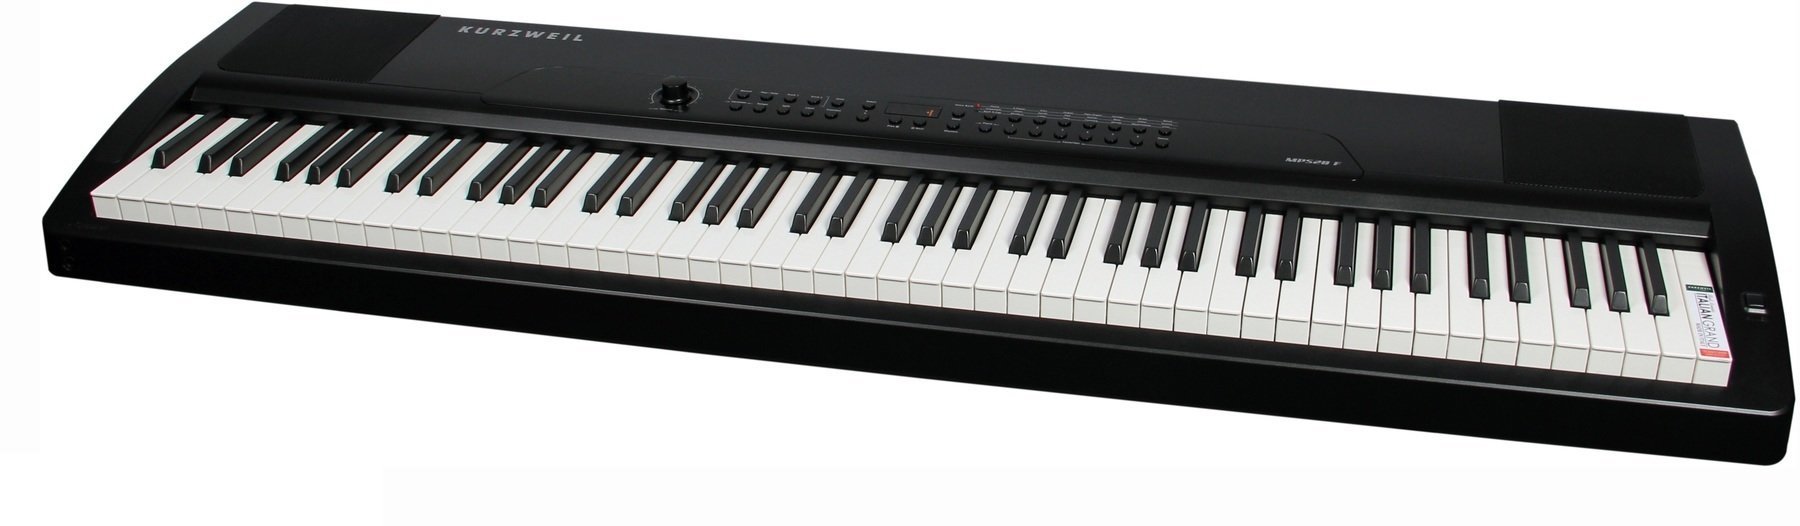 Ψηφιακό Stage Piano Kurzweil MPS20 Portable Digital Piano